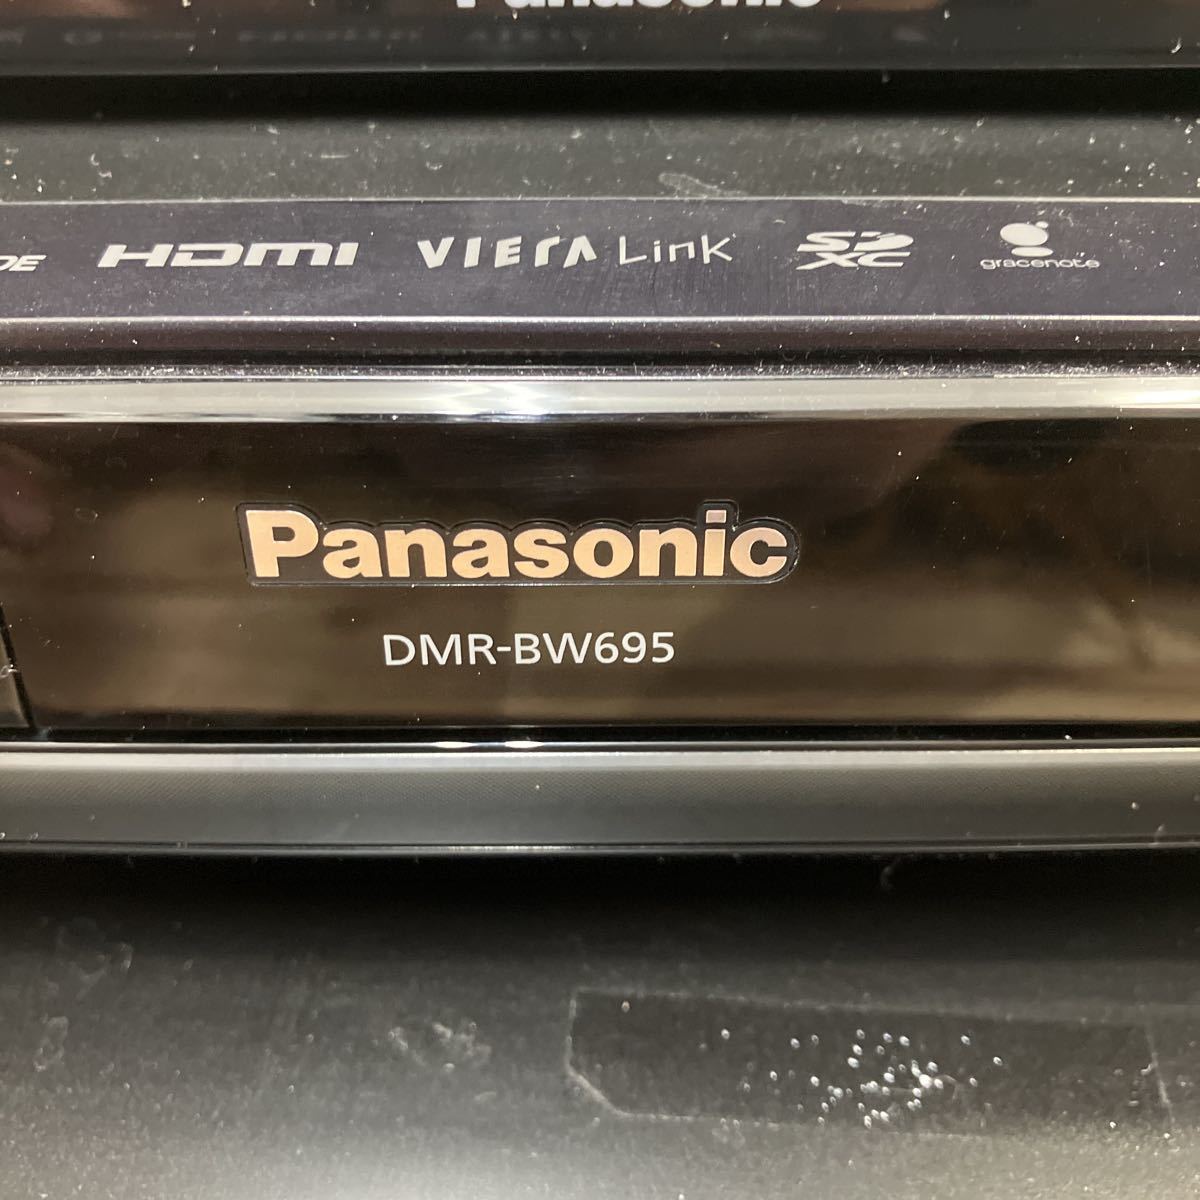 8 DVD.Blu-ray магнитофон 4 пункт суммировать DVD плеер Panasonic TOSHIBA DIGA REGZA [ электризация проверка только ][ текущее состояние распродажа ]